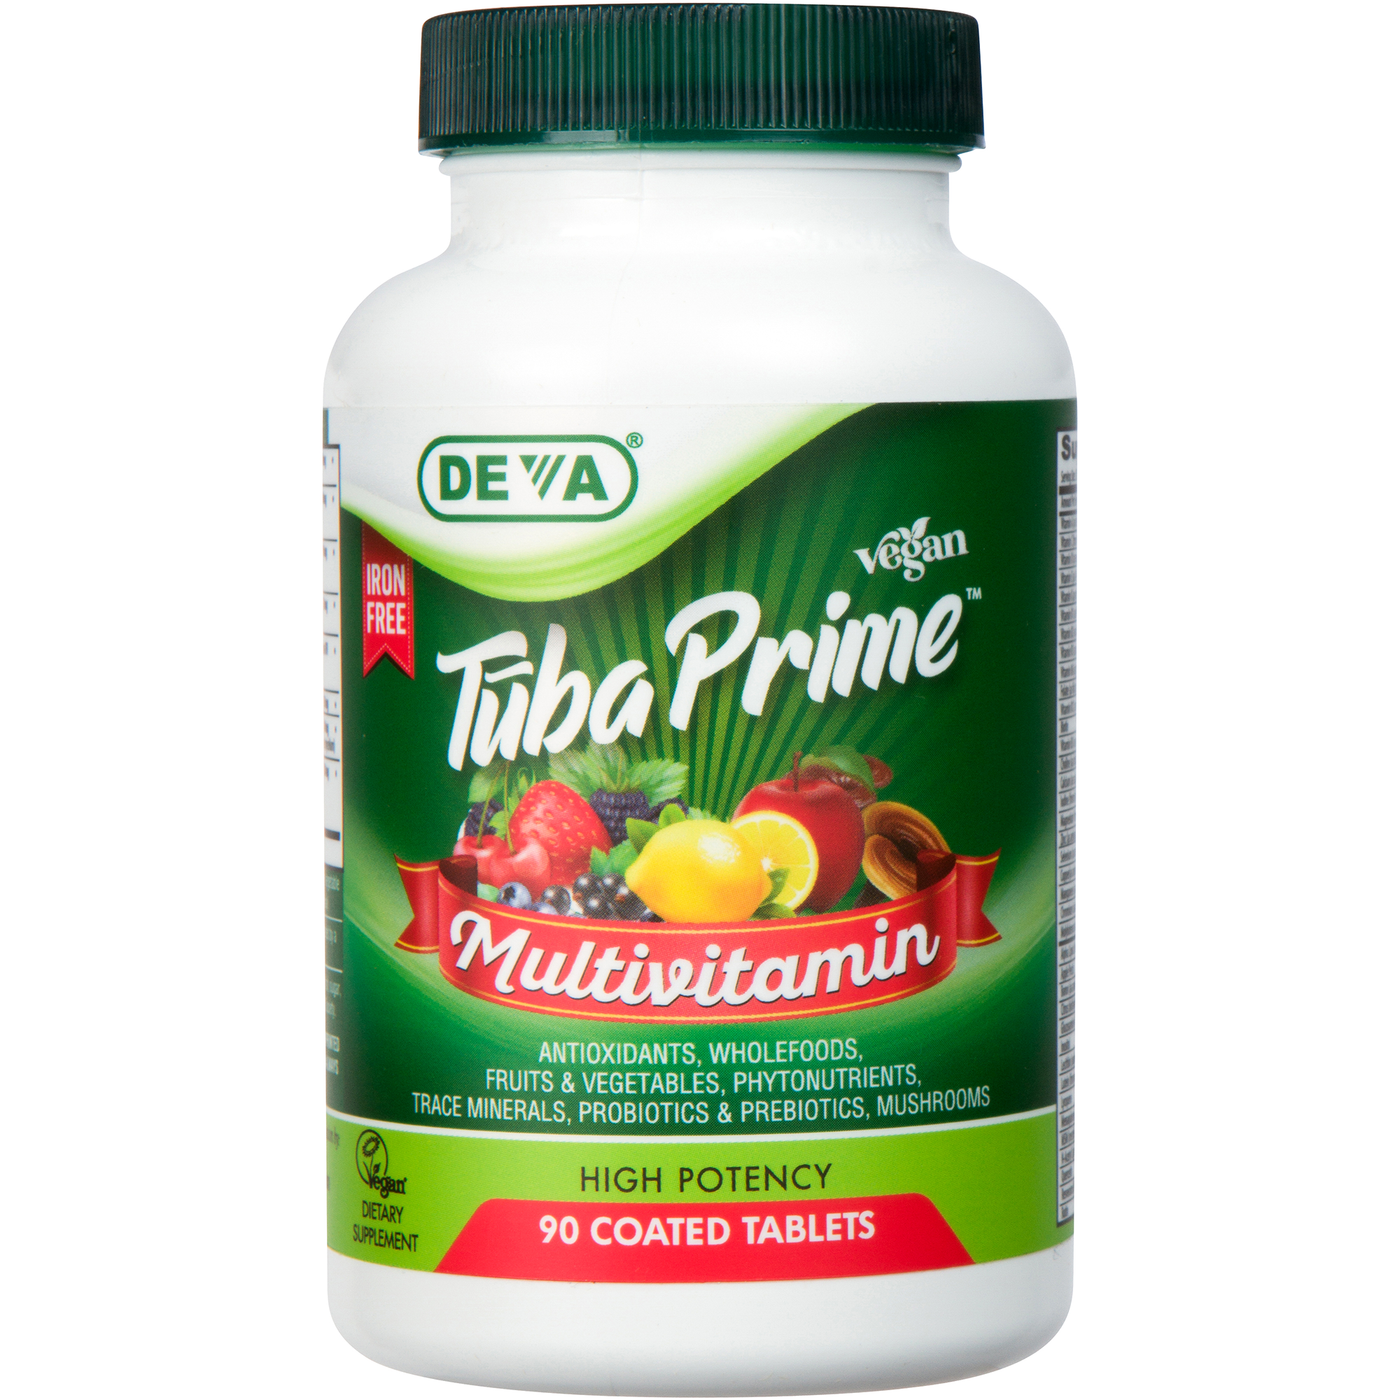 Vegan Tūba Prime Iron-Free 90 tab Curated Wellness